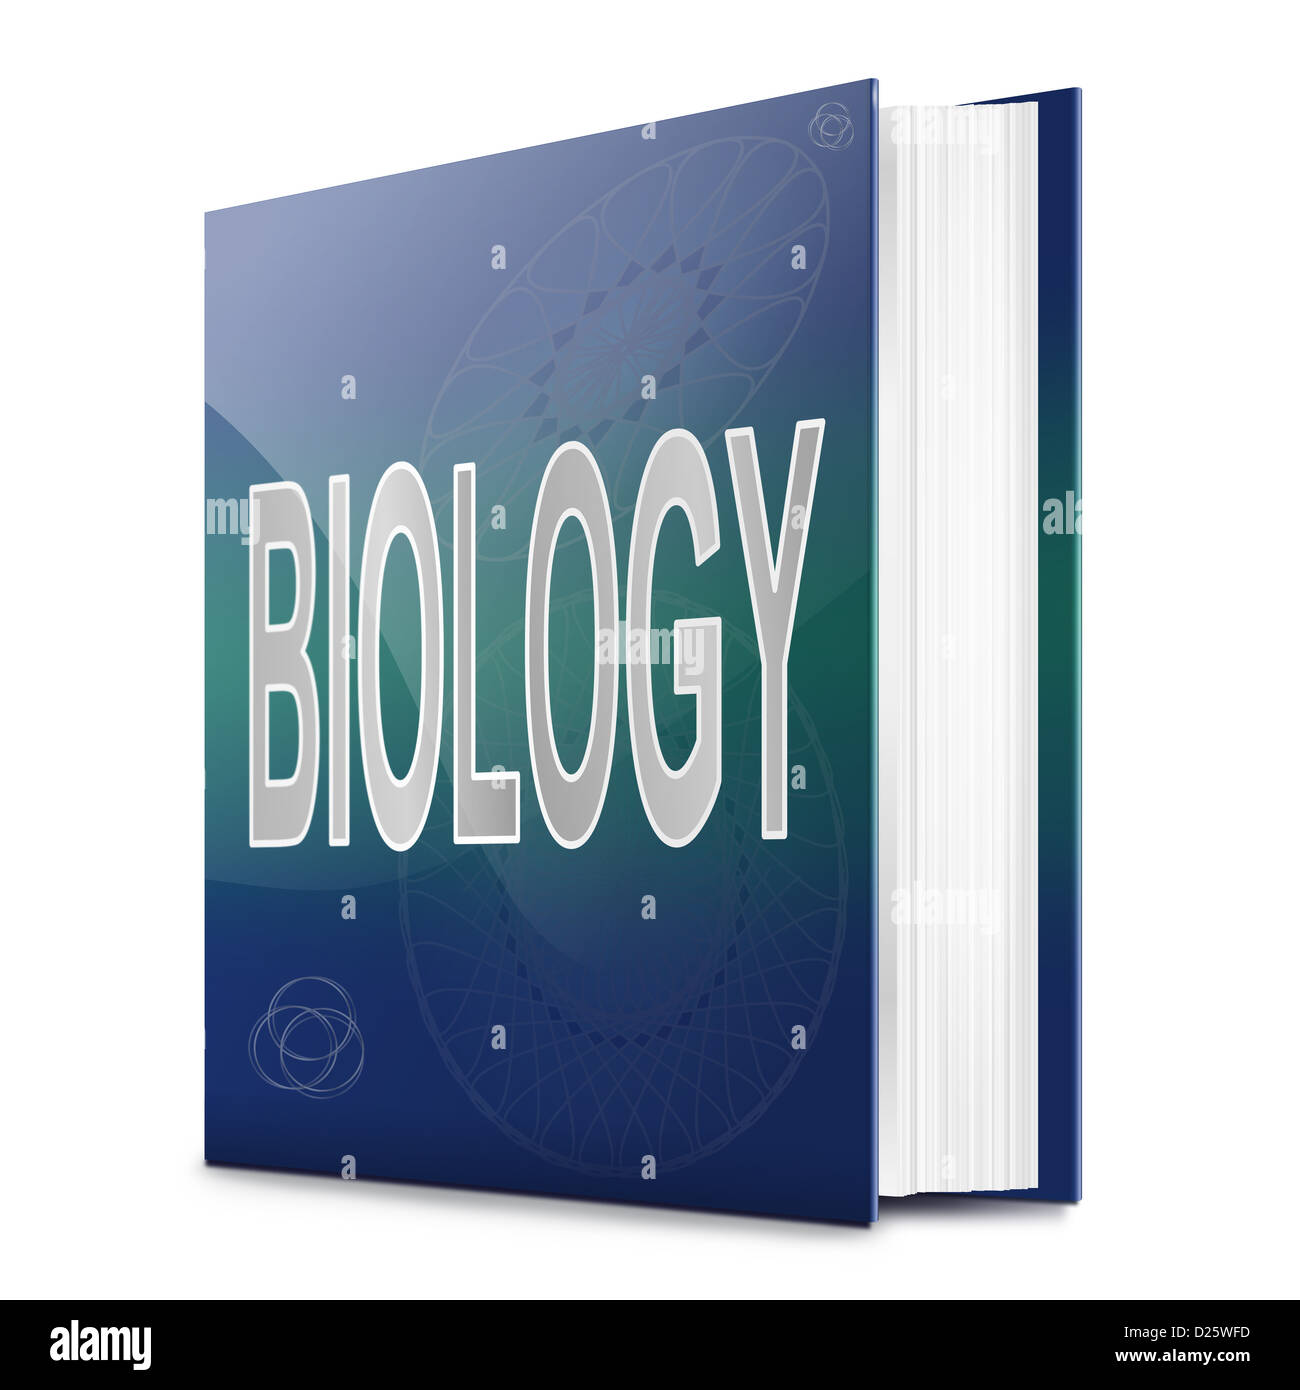 Illustration représentant un livre de texte avec un titre de la biologie. Arrière-plan blanc. Banque D'Images